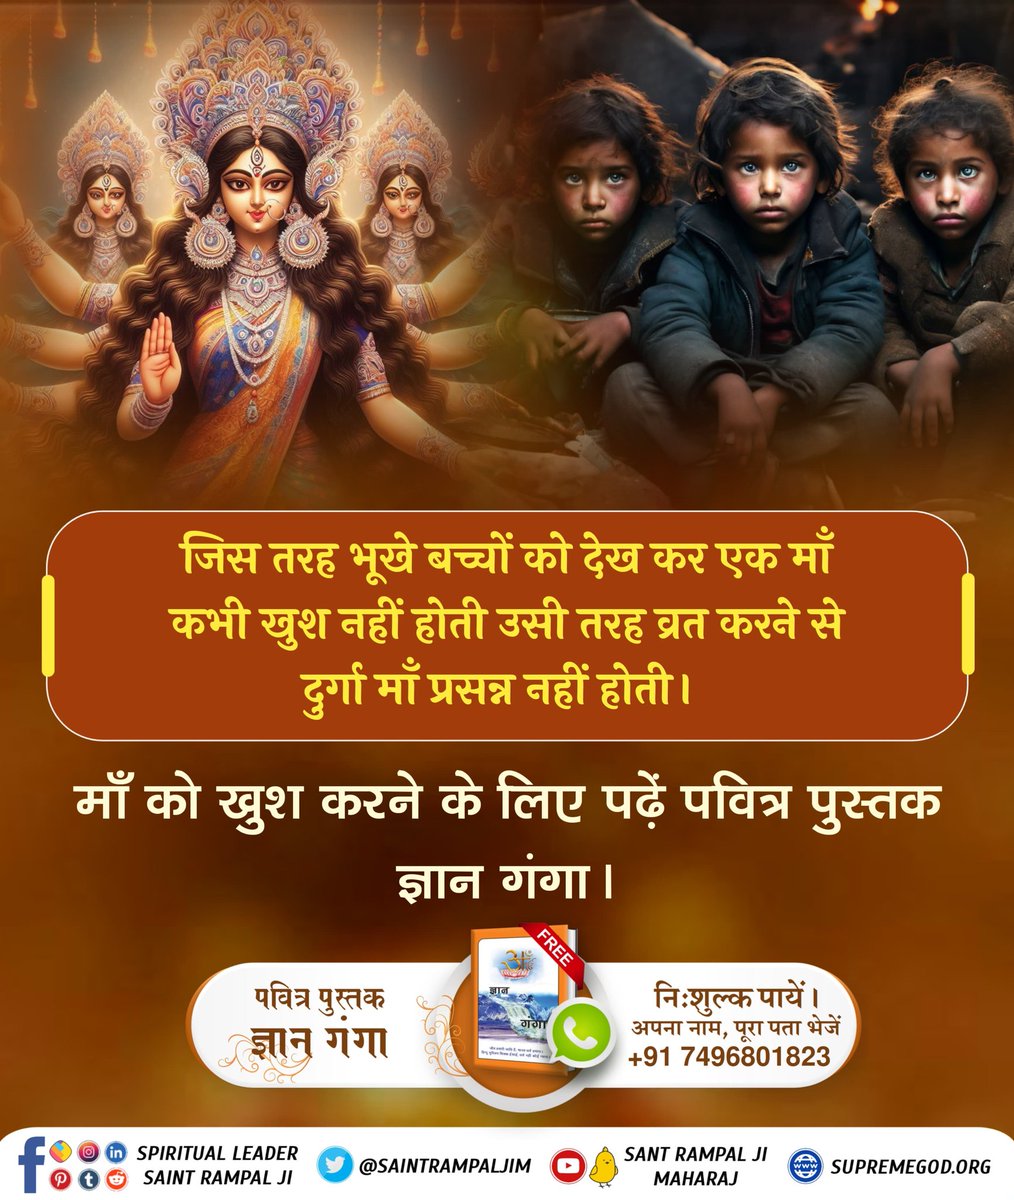 #माँ_को_खुश_करनेकेलिए पढ़ें ज्ञान गंगा इस नवरात्रि पर जानें माता को अष्टंगी क्यों कहते हैं? जानने के लिए अवश्य पढ़ें ज्ञान गंगा।